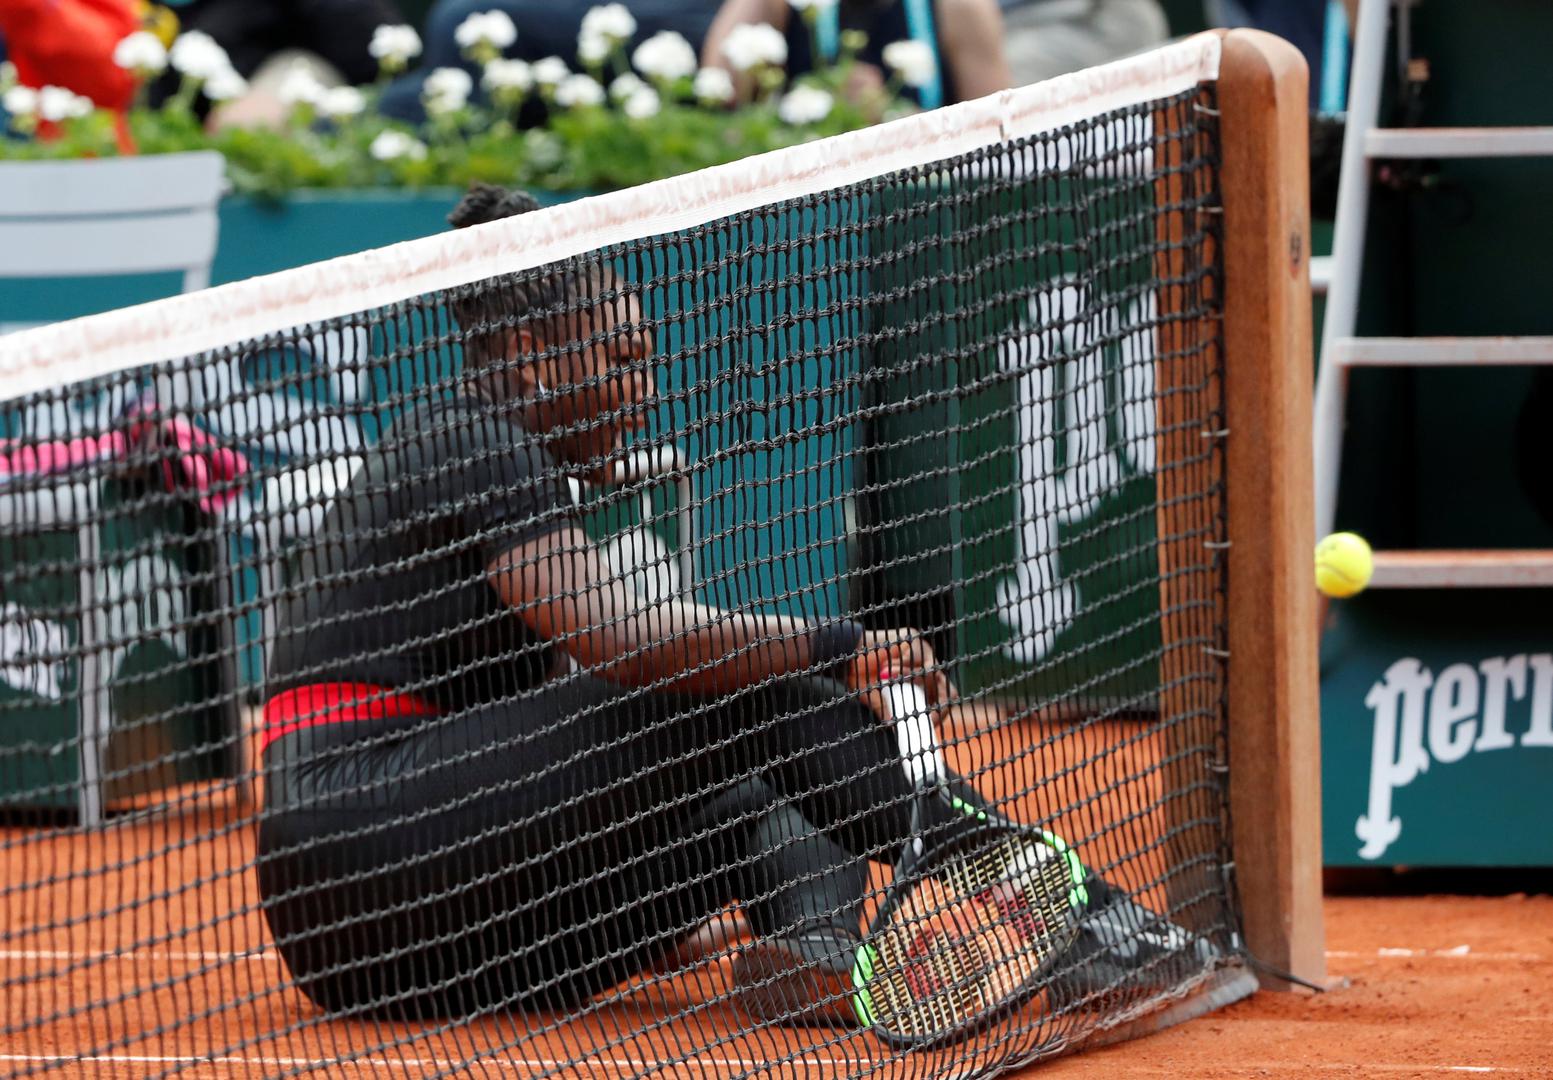 Serena Williams vratila se tenisu u ožujku ove godine nakon što je u rujnu prošle godine rodila kćerku.

